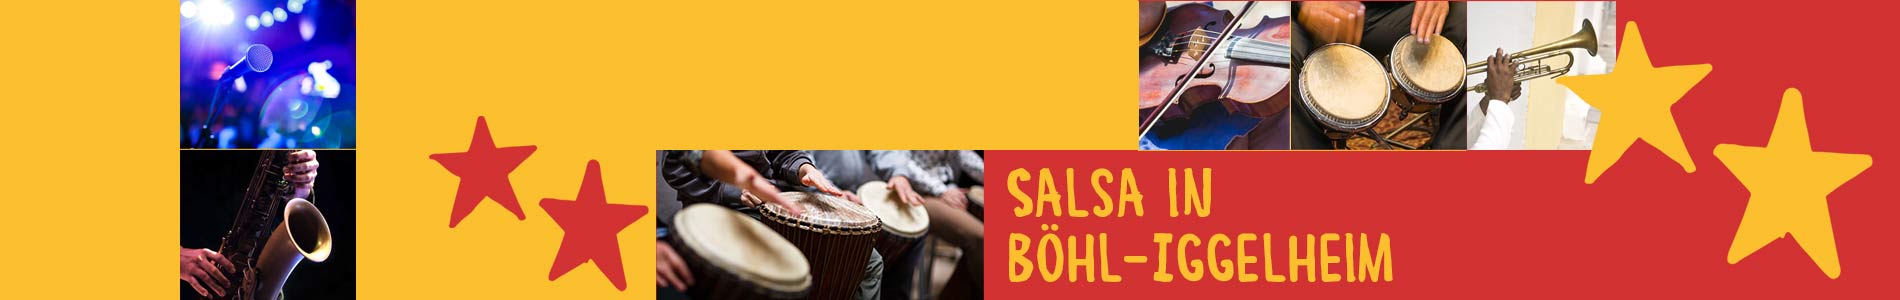 Salsa in Böhl-Iggelheim – Salsa lernen und tanzen, Tanzkurse, Partys, Veranstaltungen